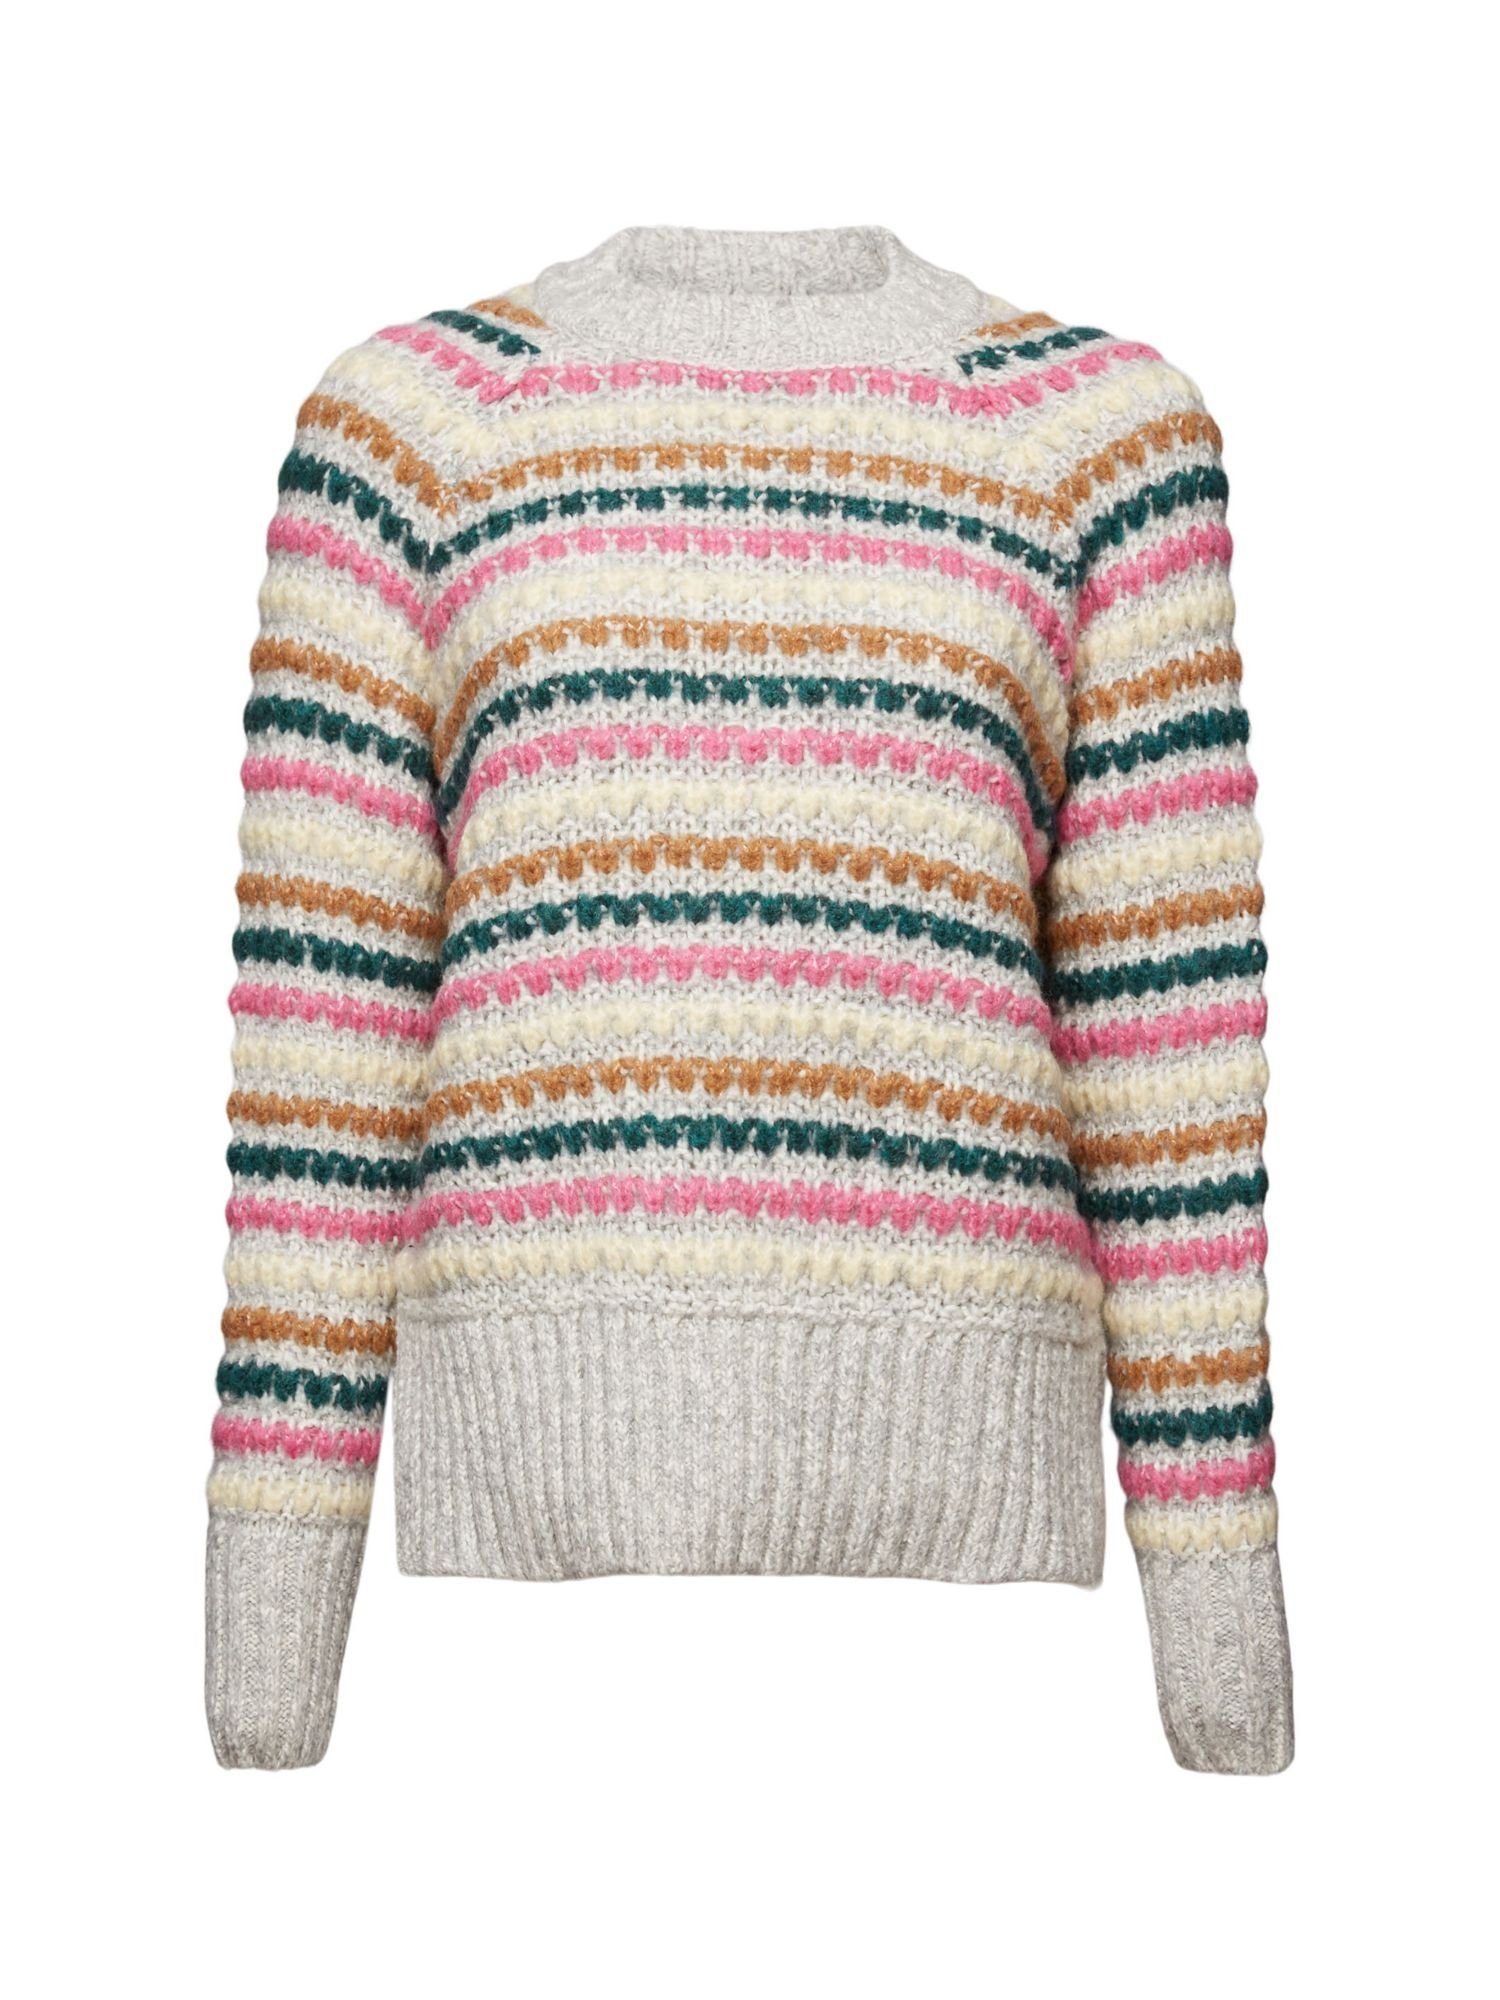 Pullover edc aus Rundhalspullover by Baumwolle Esprit Wolle und Esprit LIGHT GREY